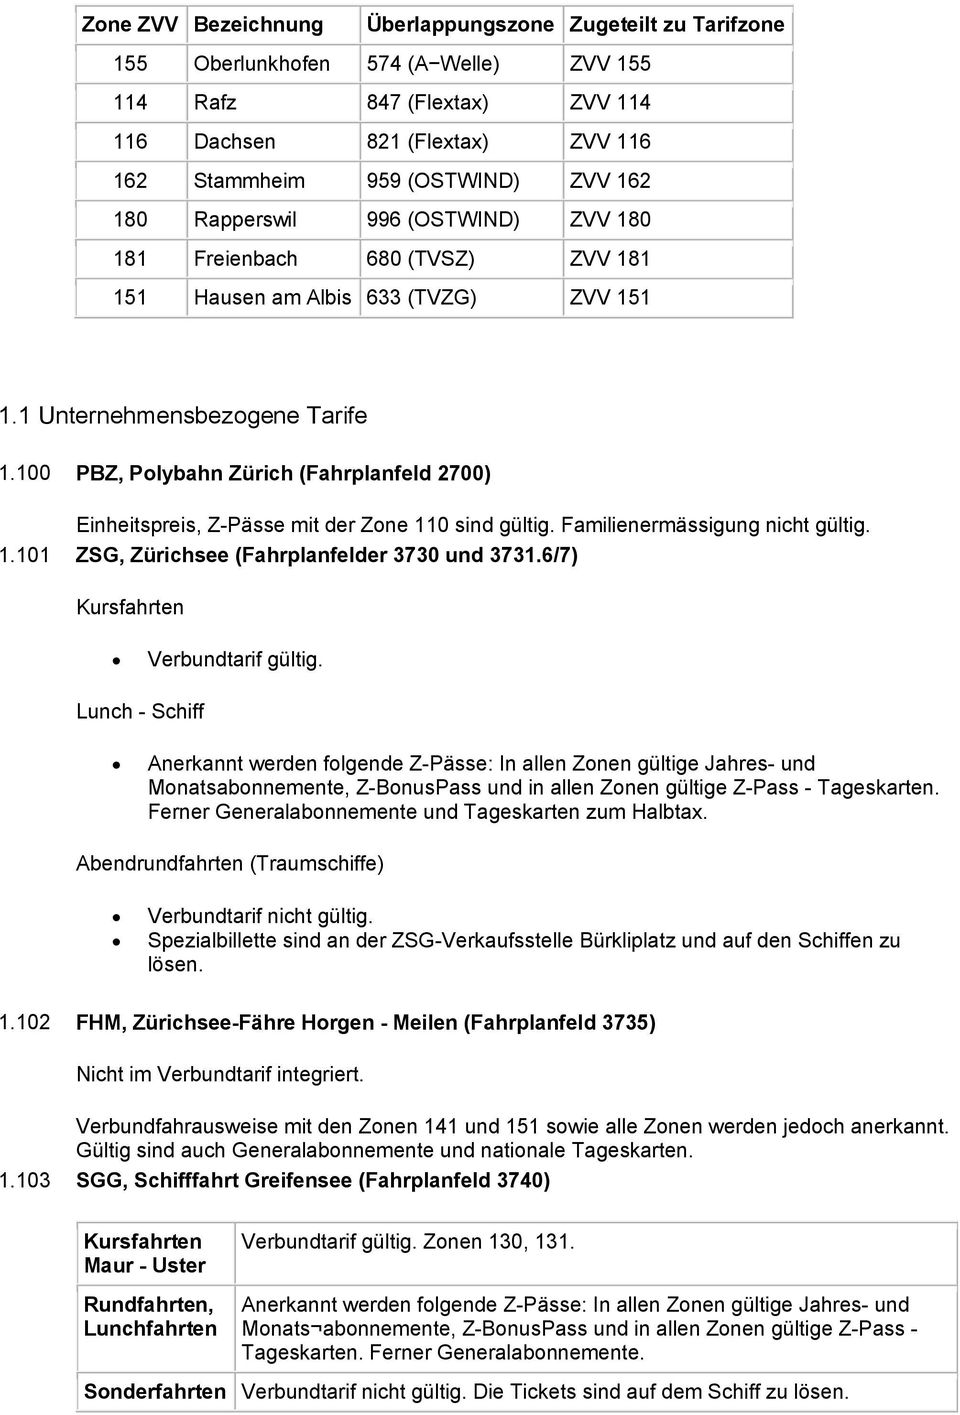 100 PBZ, Polybahn Zürich (Fahrplanfeld 2700) Einheitspreis, Z-Pässe mit der Zone 110 sind gültig. Familienermässigung nicht gültig. 1.101 ZSG, Zürichsee (Fahrplanfelder 3730 und 3731.